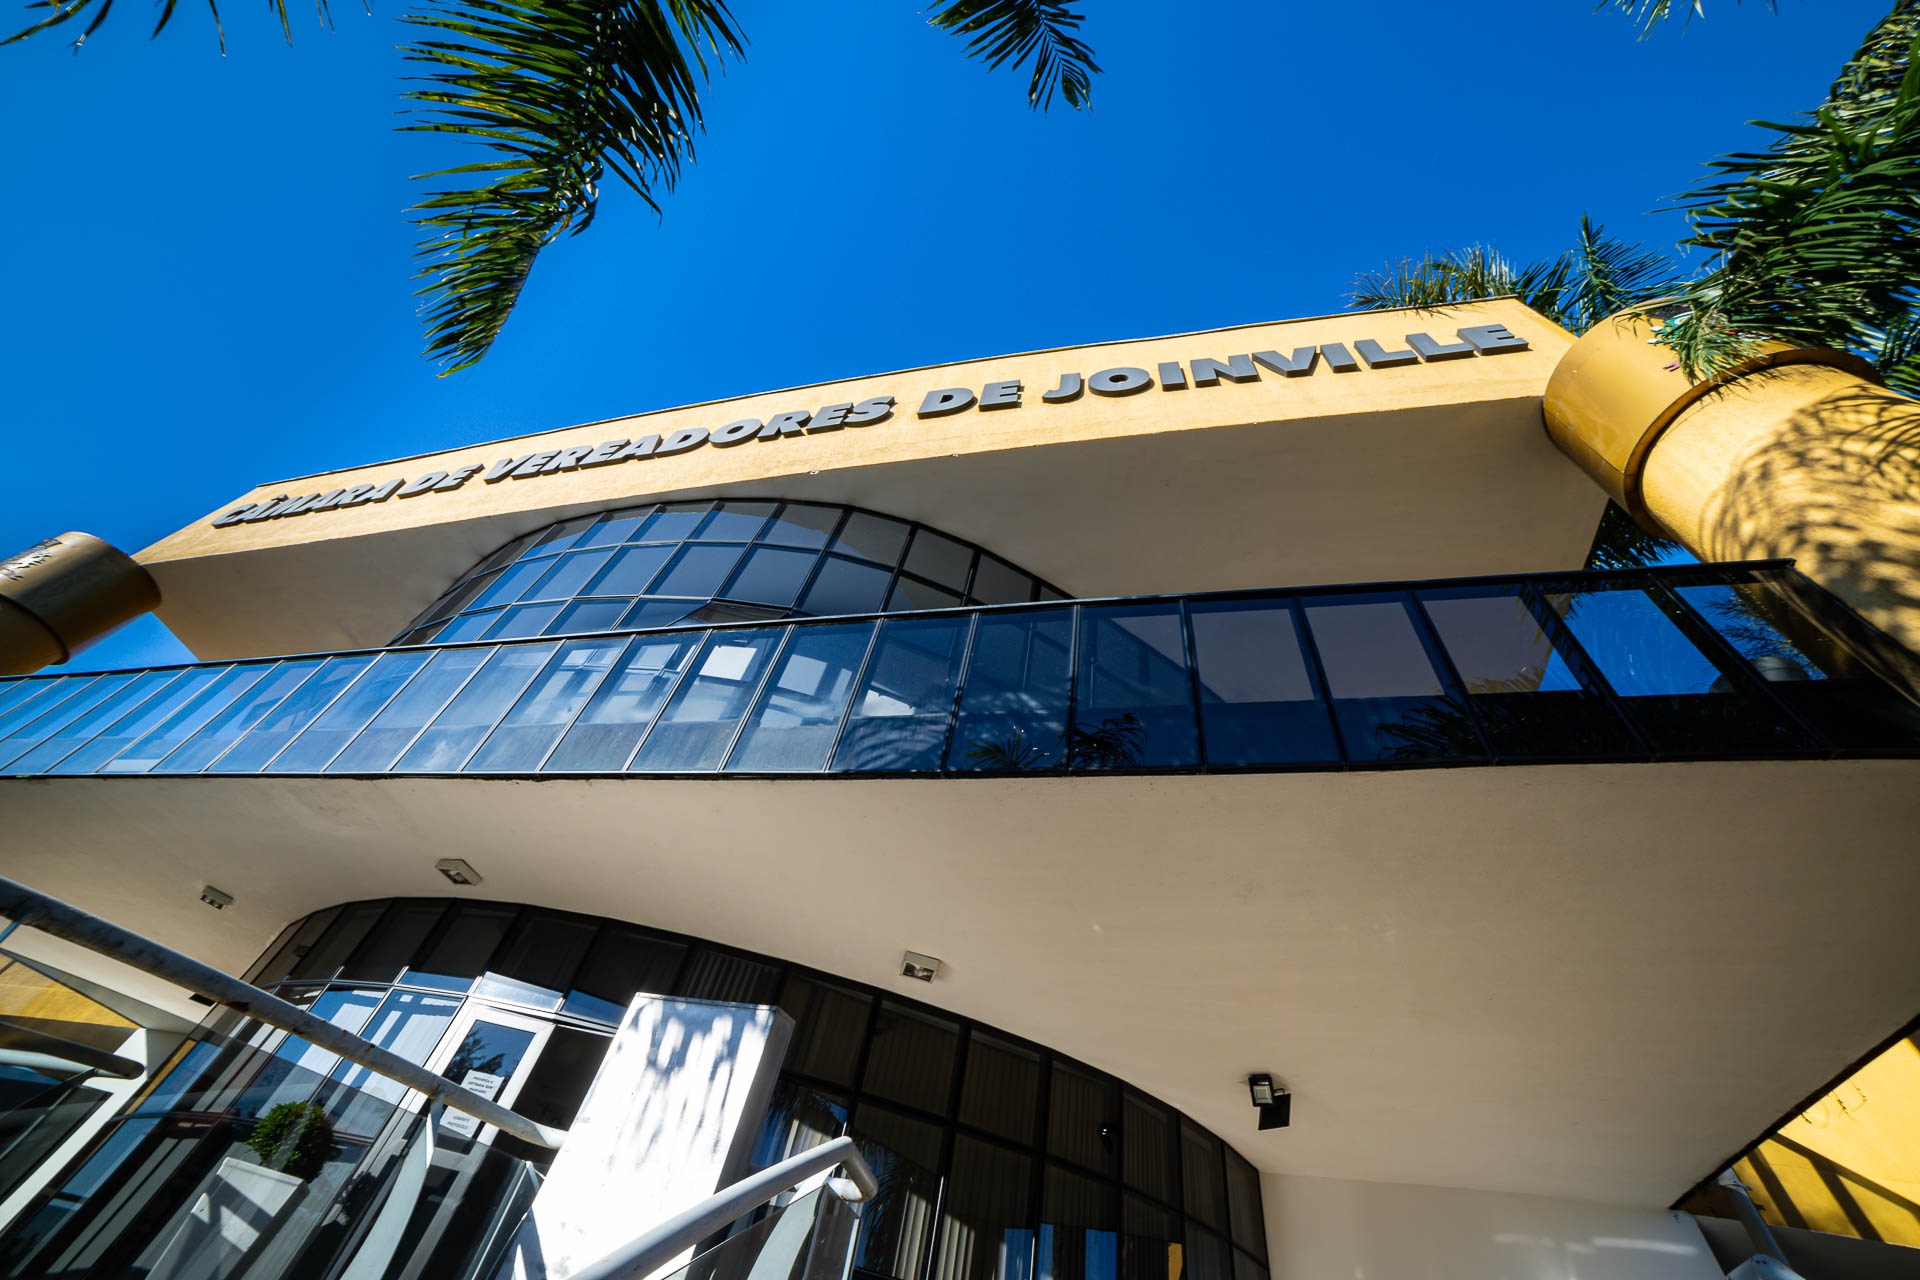 Agência ALESC  Projeto da Escola do Legislativo será apresentado